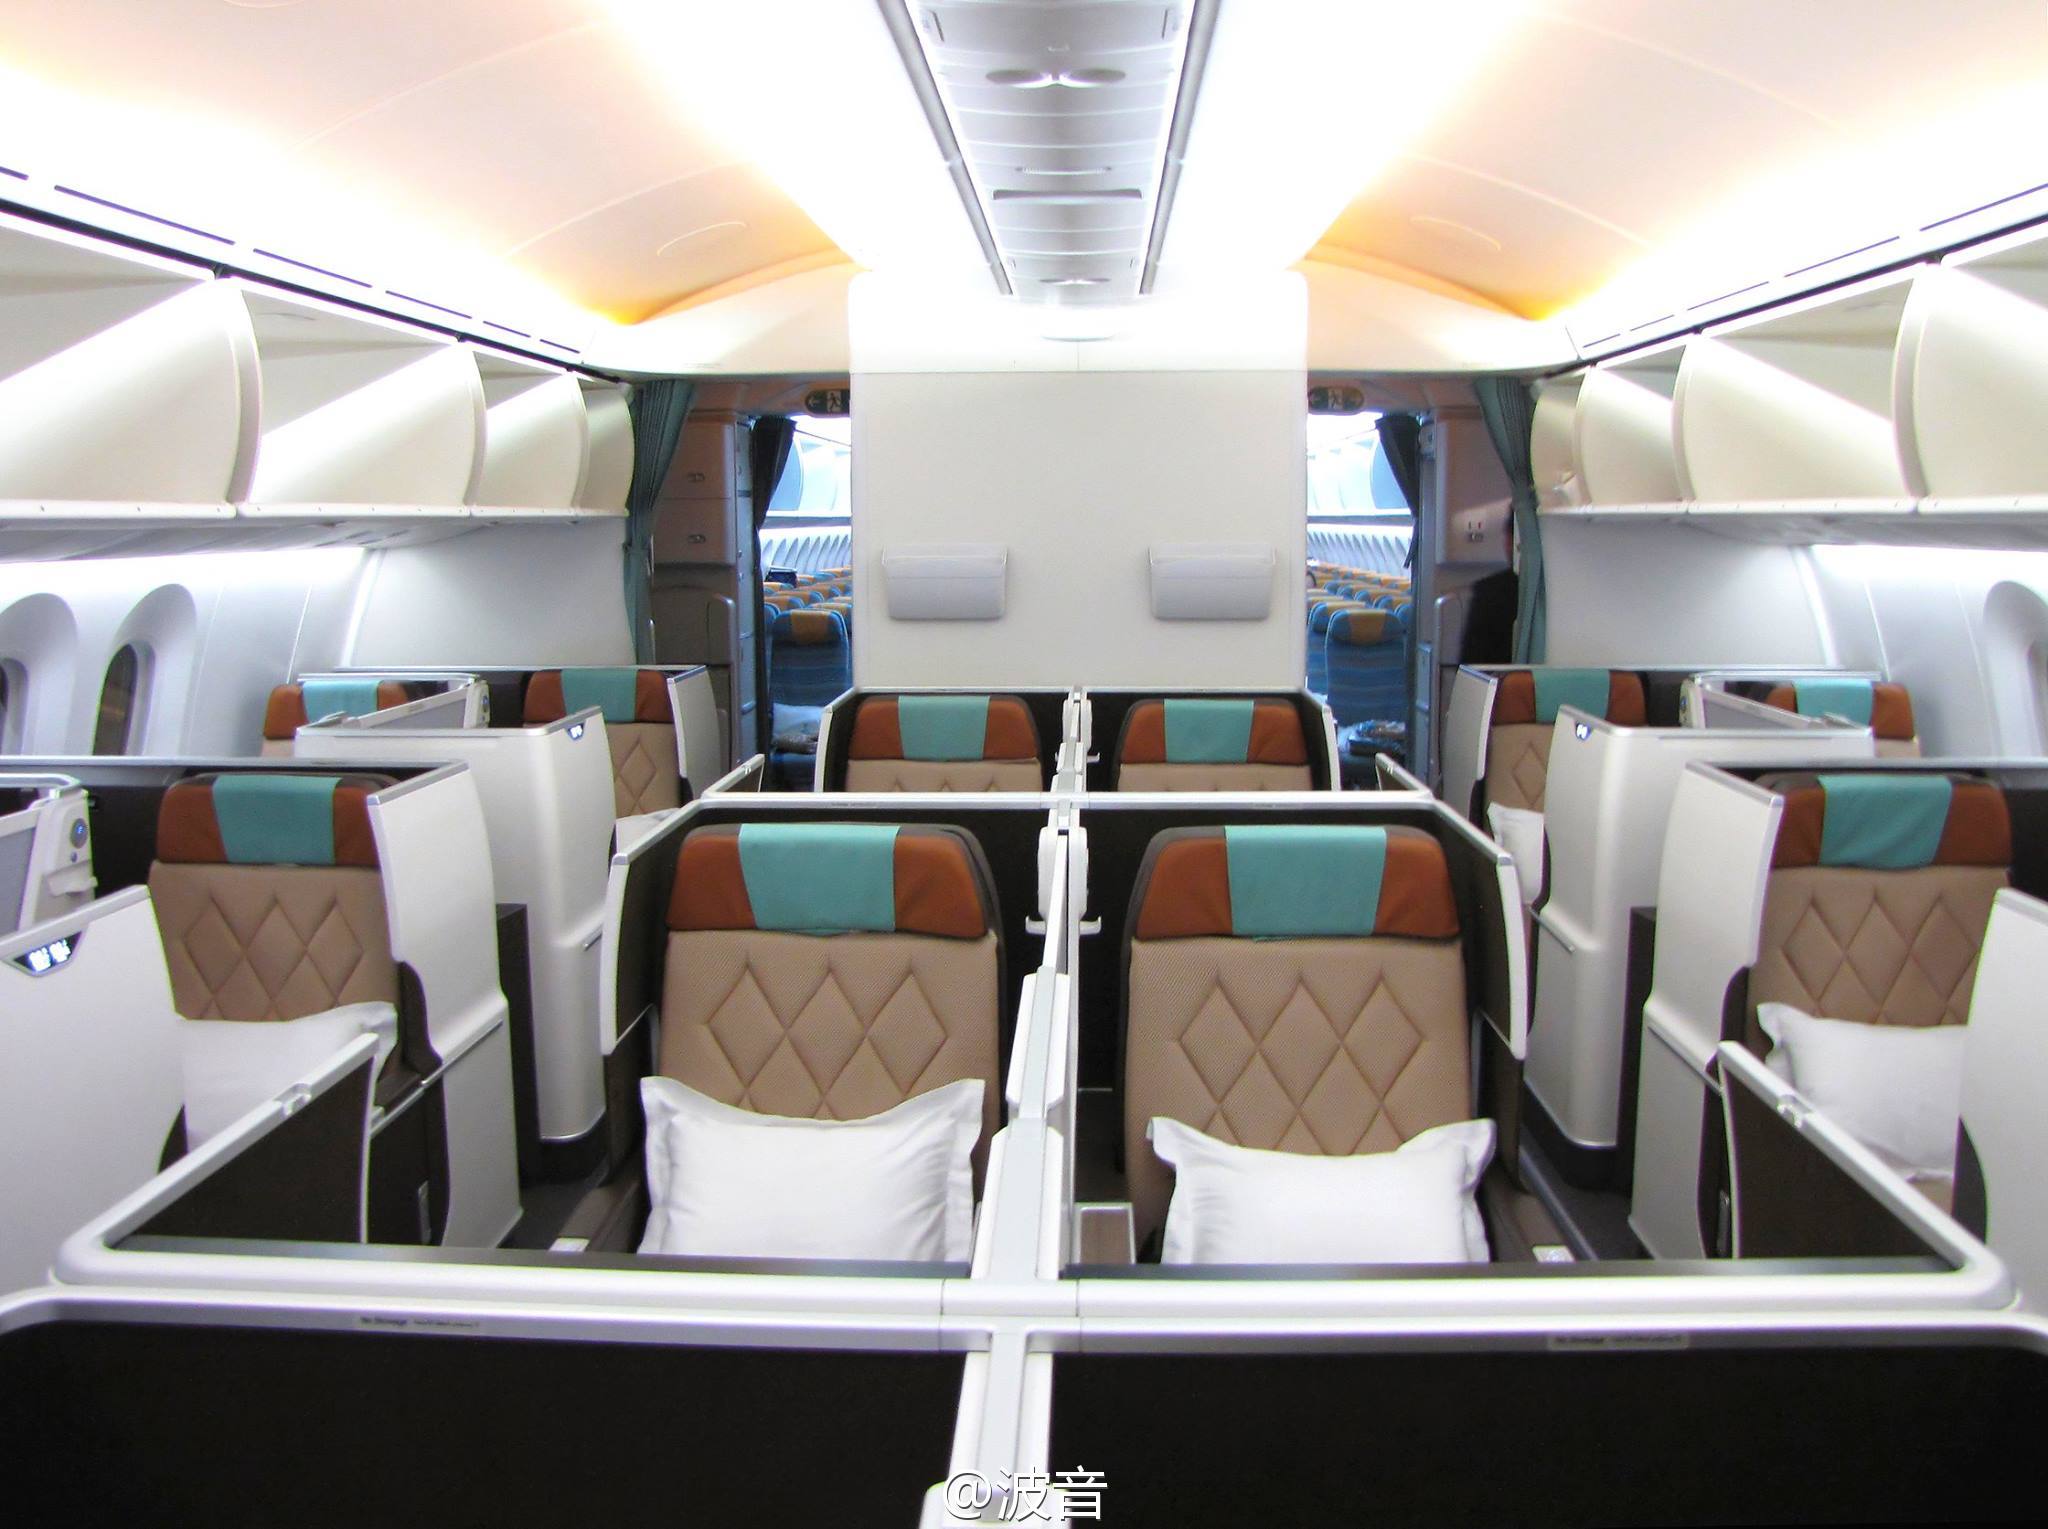 Best First-Class Airplane Seats - Business Insider